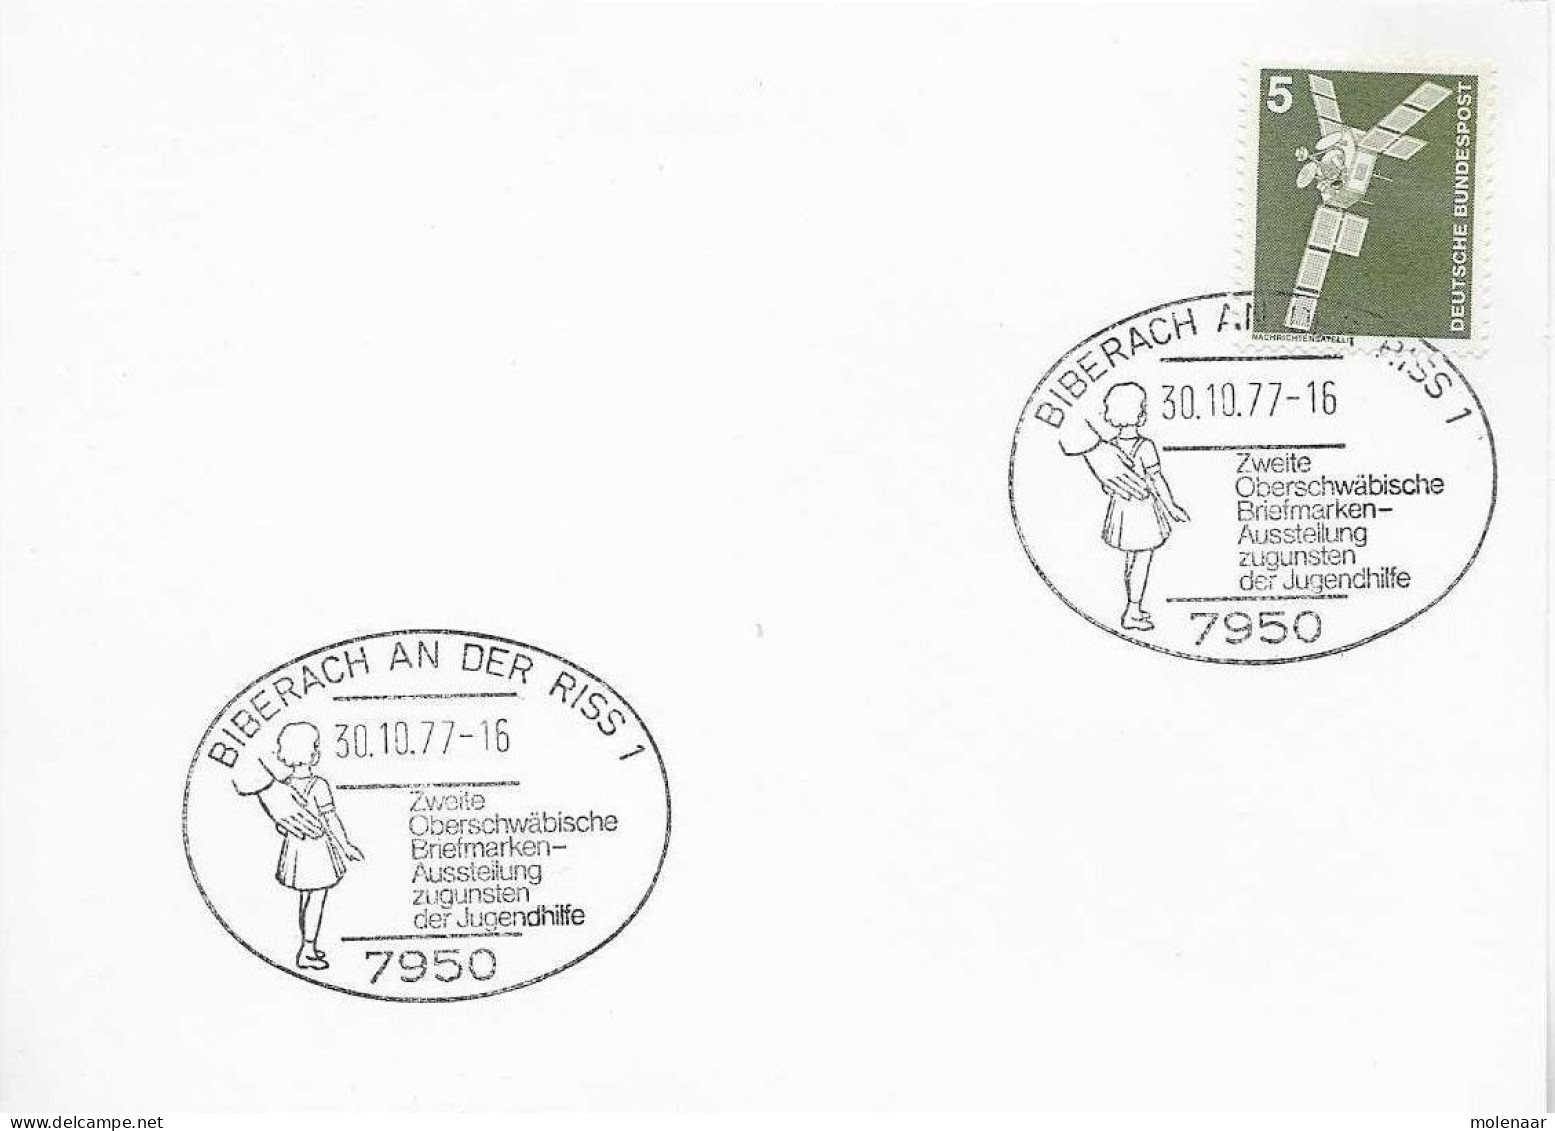 Postzegels > Europa > Duitsland > Berlijn > 1970-1979 > Kaart Met No. 494 (17150) - Cartas & Documentos